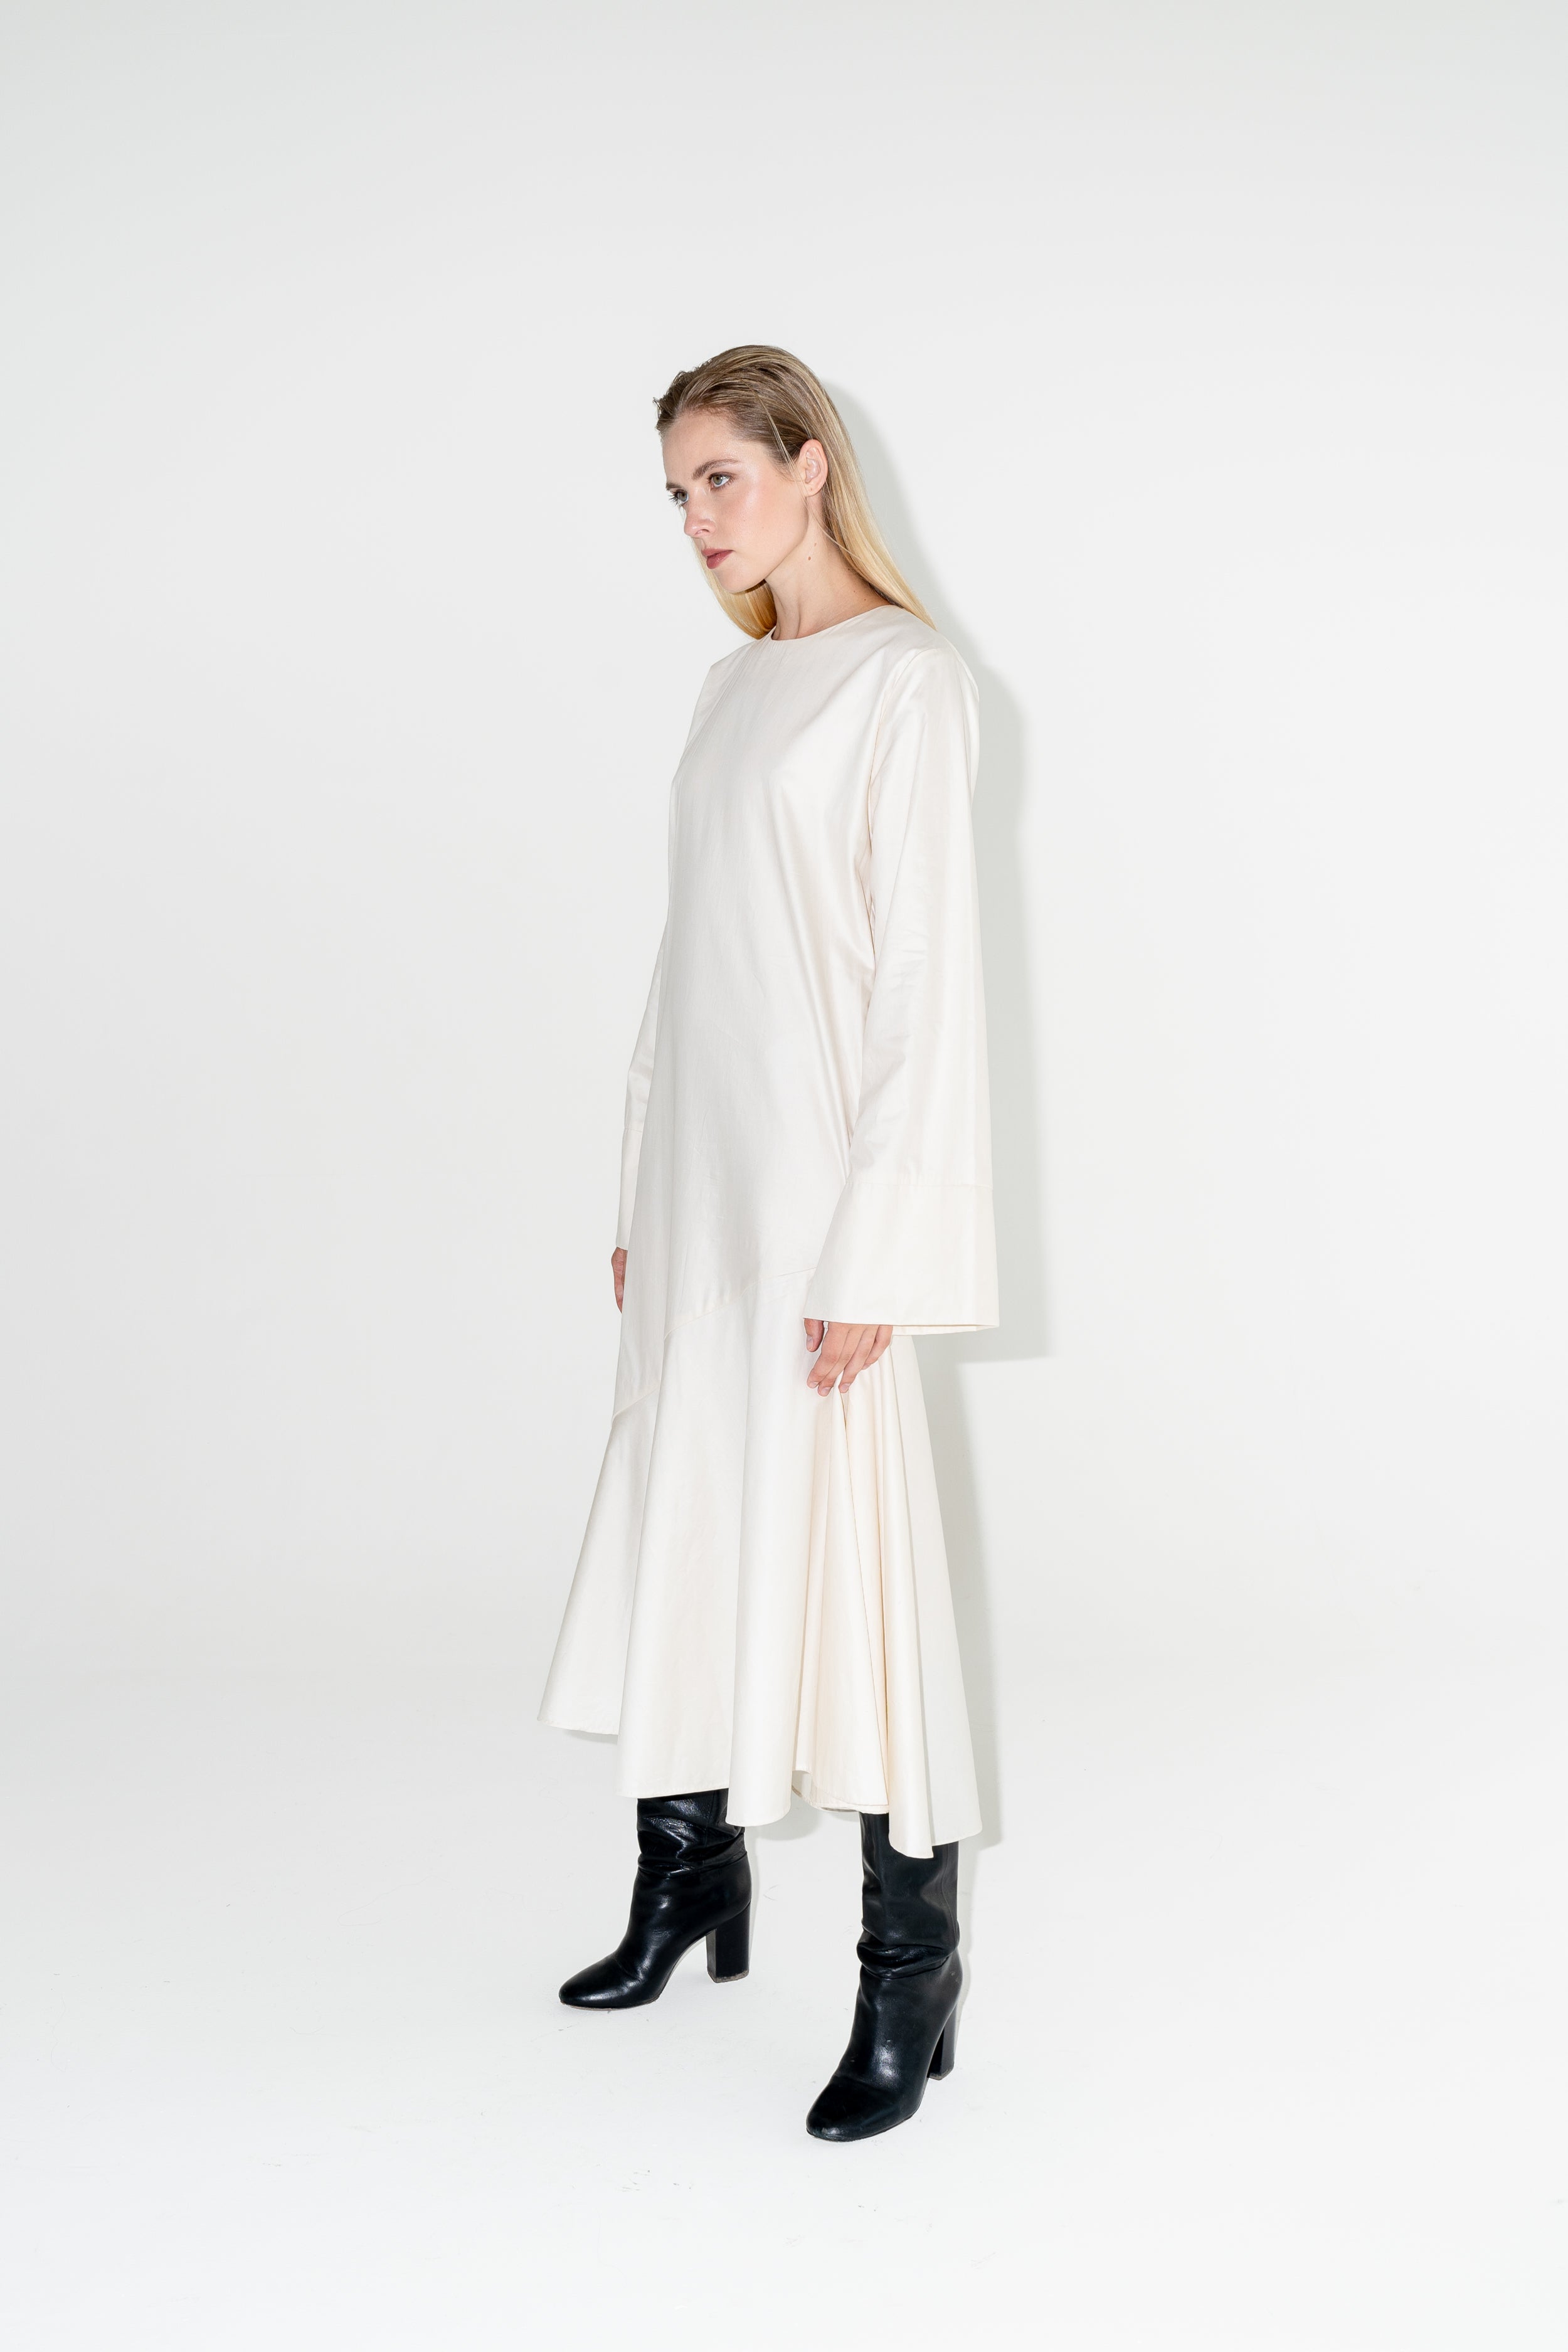 Dámské bílé dlouhé šaty ADVA Studios z organické bavlny s výraznými černými koženými botami.